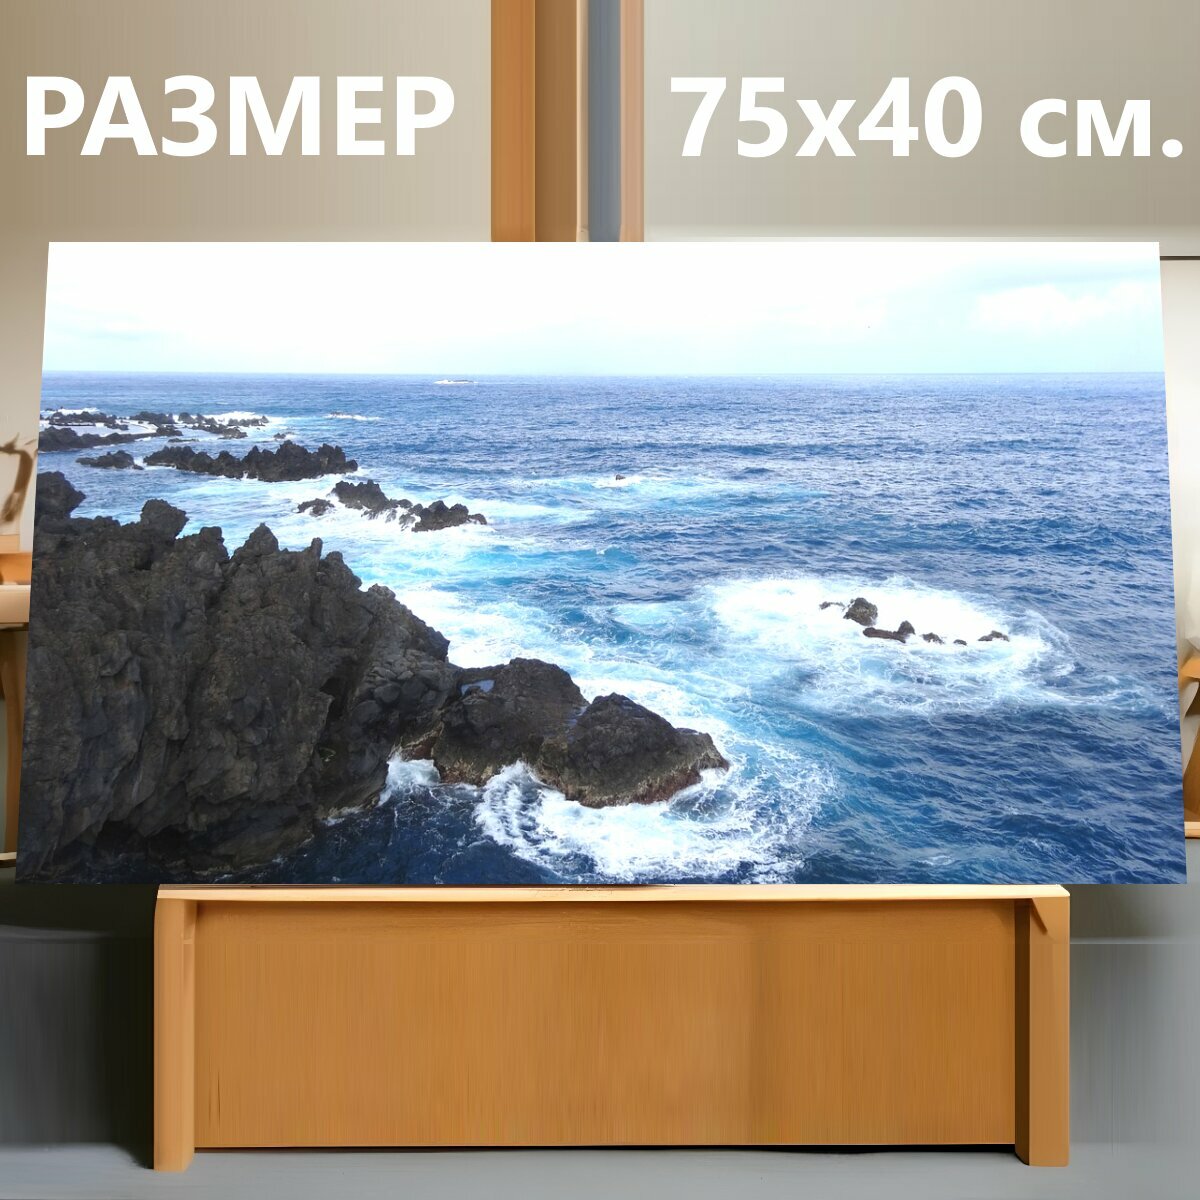 Картина на холсте "Море, воды, морской берег" на подрамнике 75х40 см. для интерьера